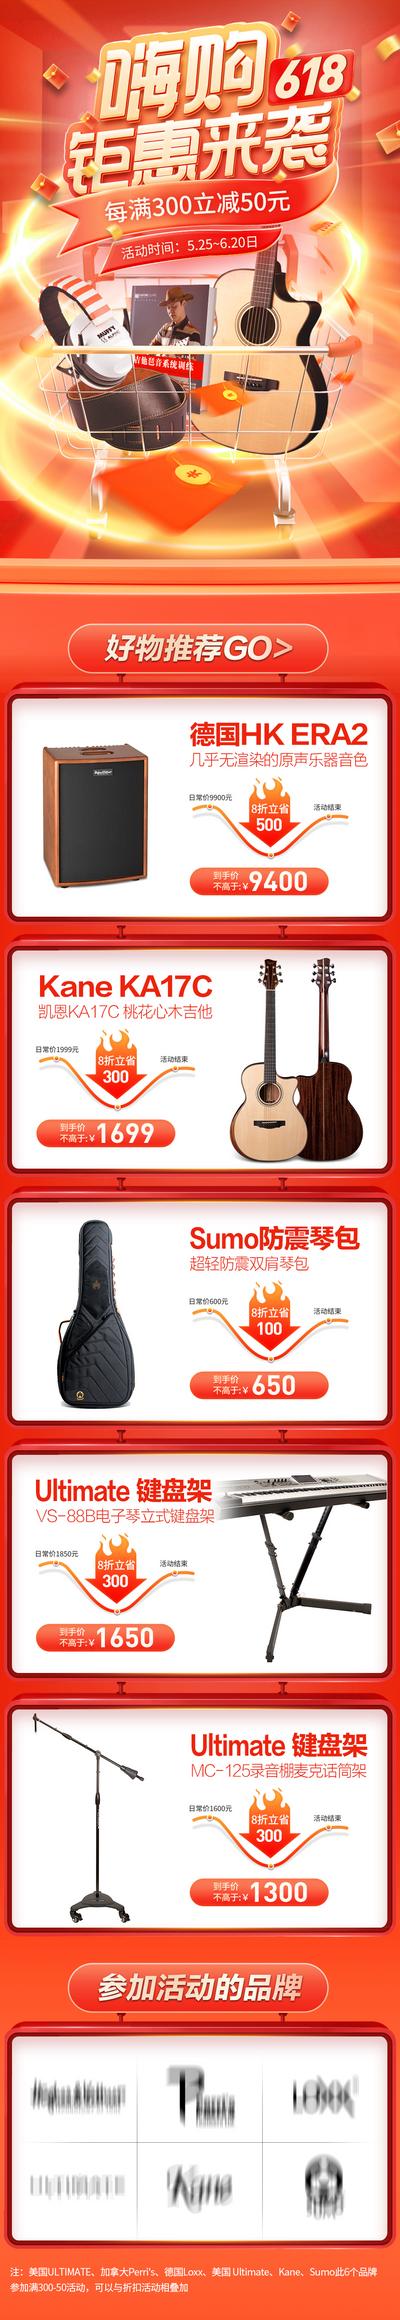 【南门网】广告 海报 电商 大促 618 京东 专题 双11 双12 乐器 音乐